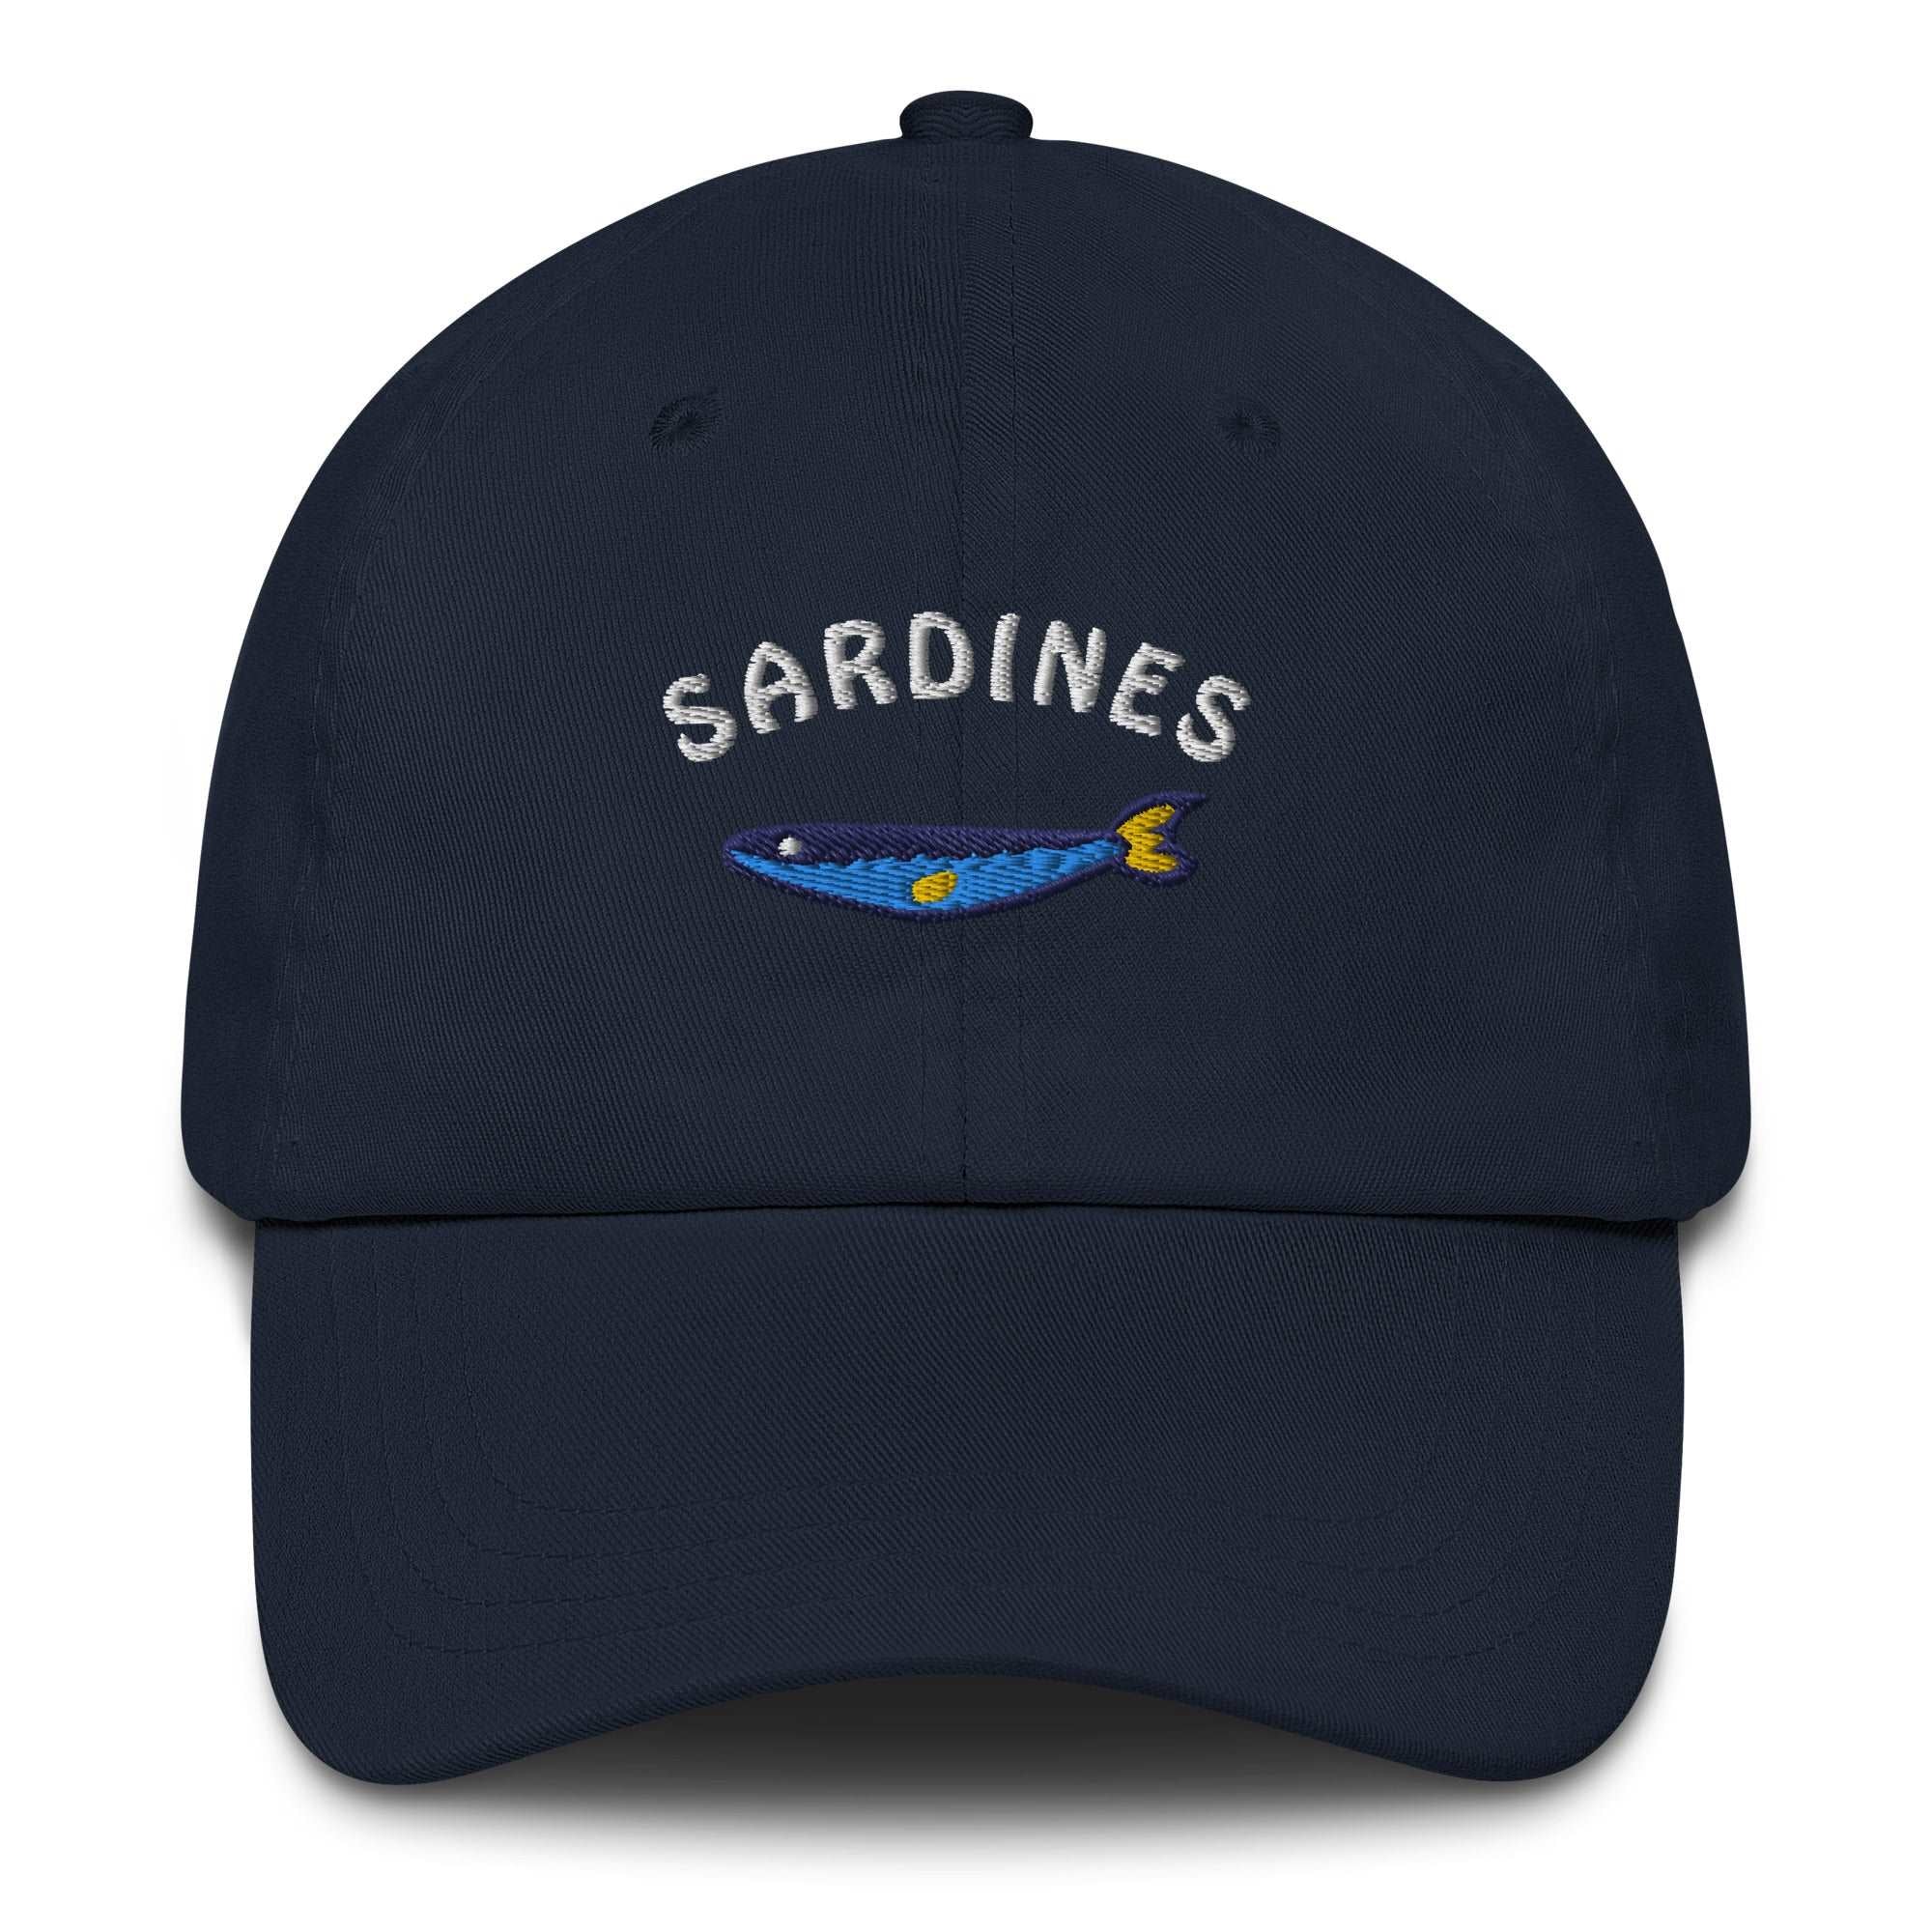 Sardines - Cap